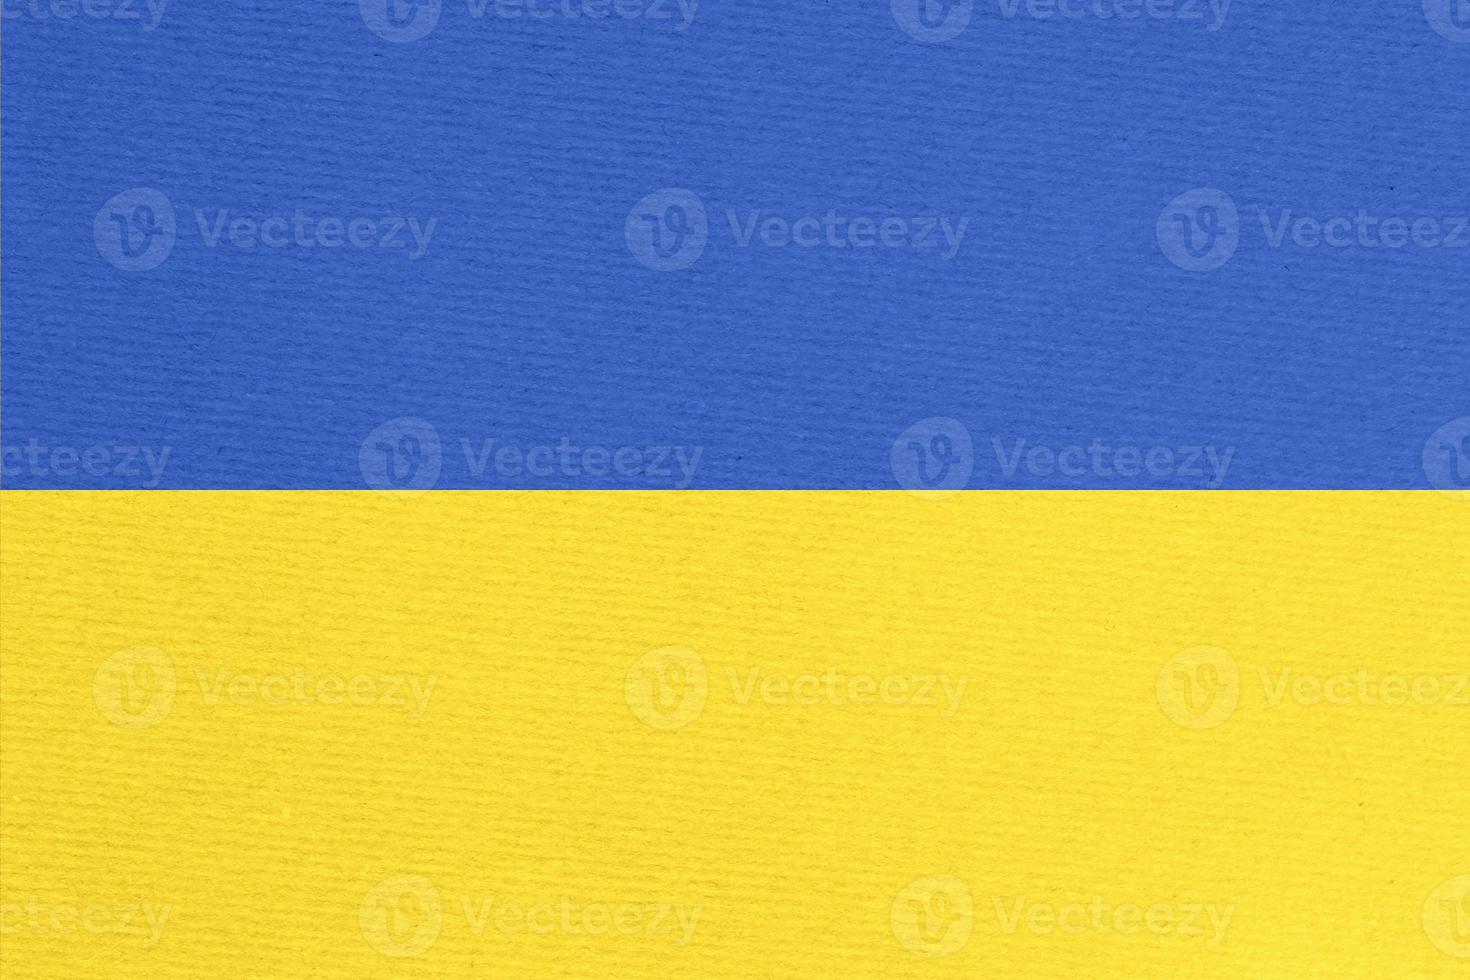 ukrainien drapeau peint sur papier carton photo